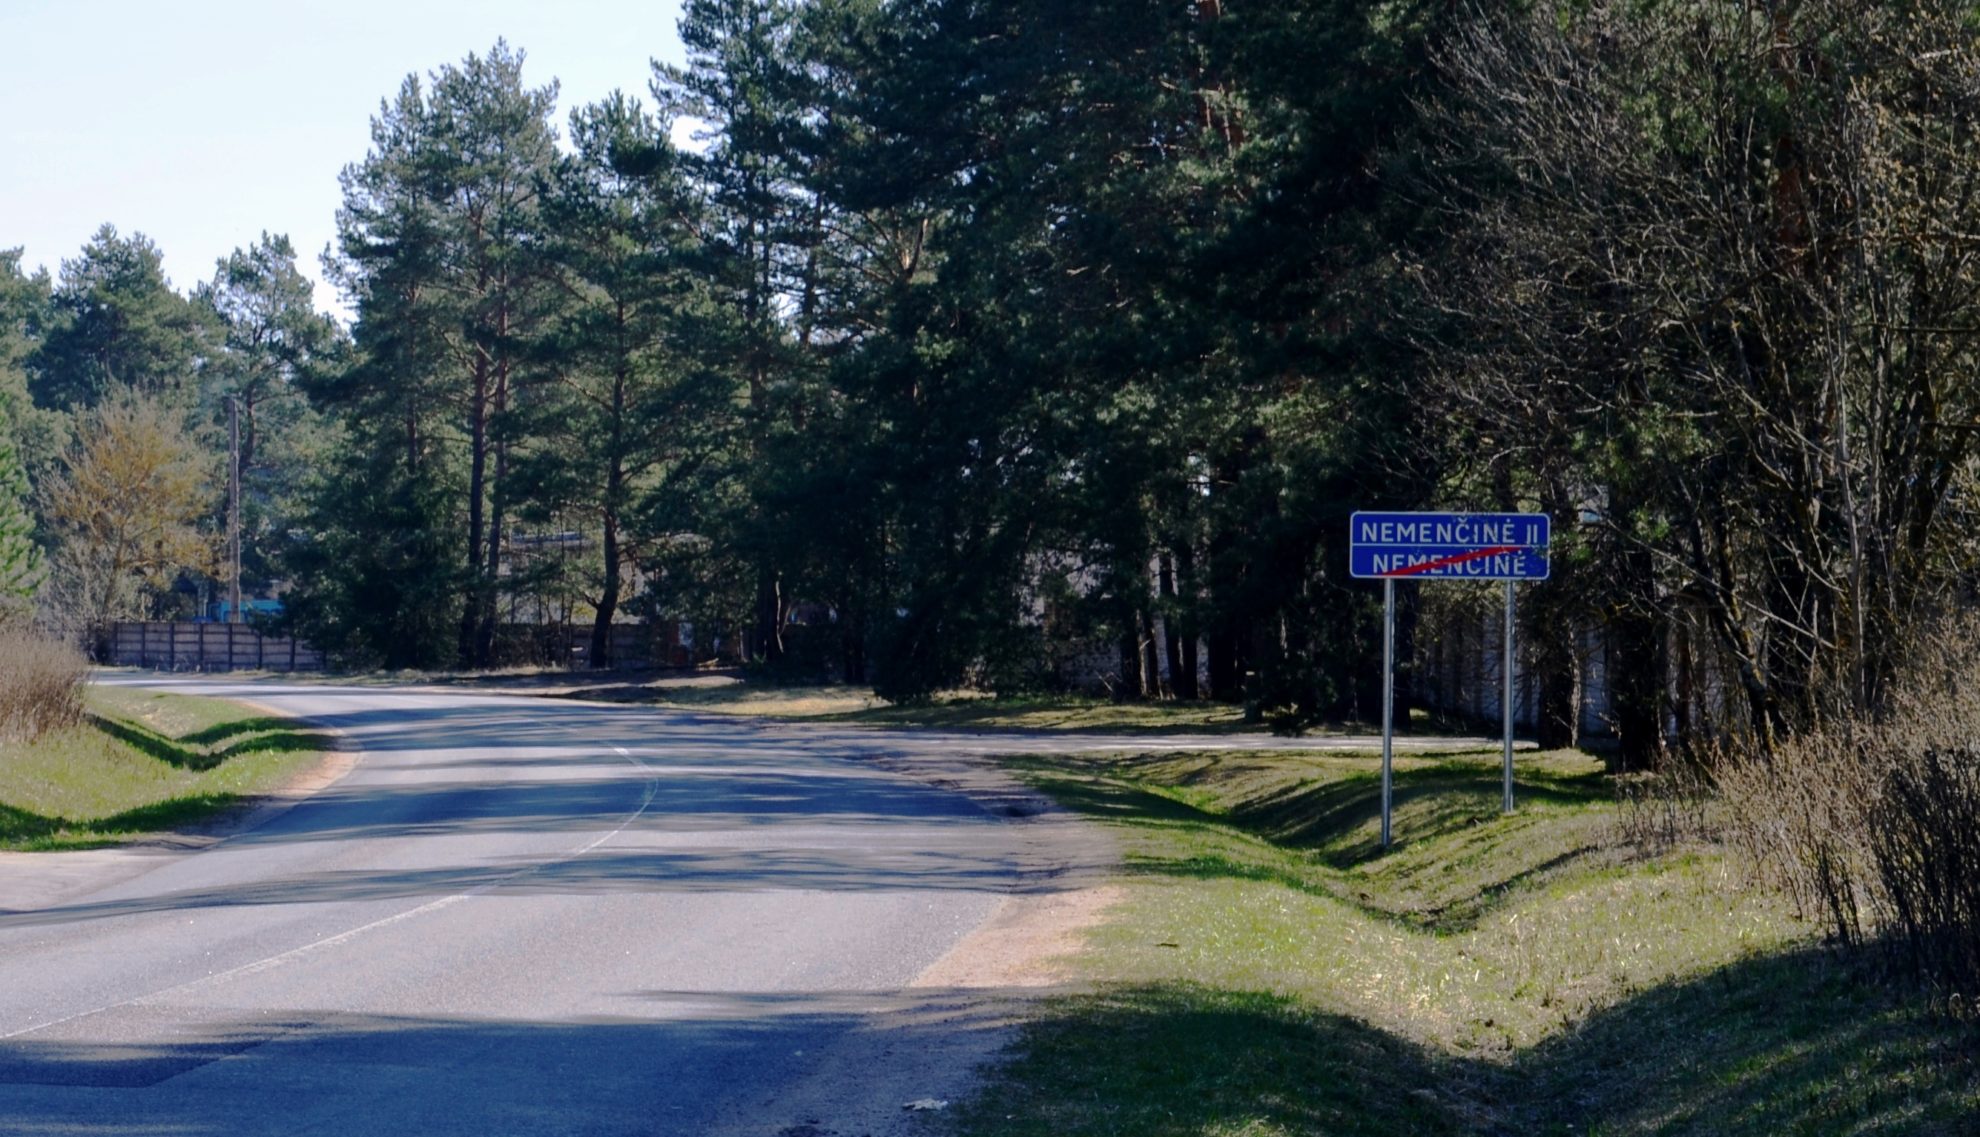 Dėl koronaviruso plitimo grėsmės Vilniaus rajone esantis Nemenčinės miestelis bus uždarytas savaitei, nuo ketvirtadienio ryto, trečiadienį nusprendė Vyriausybė.